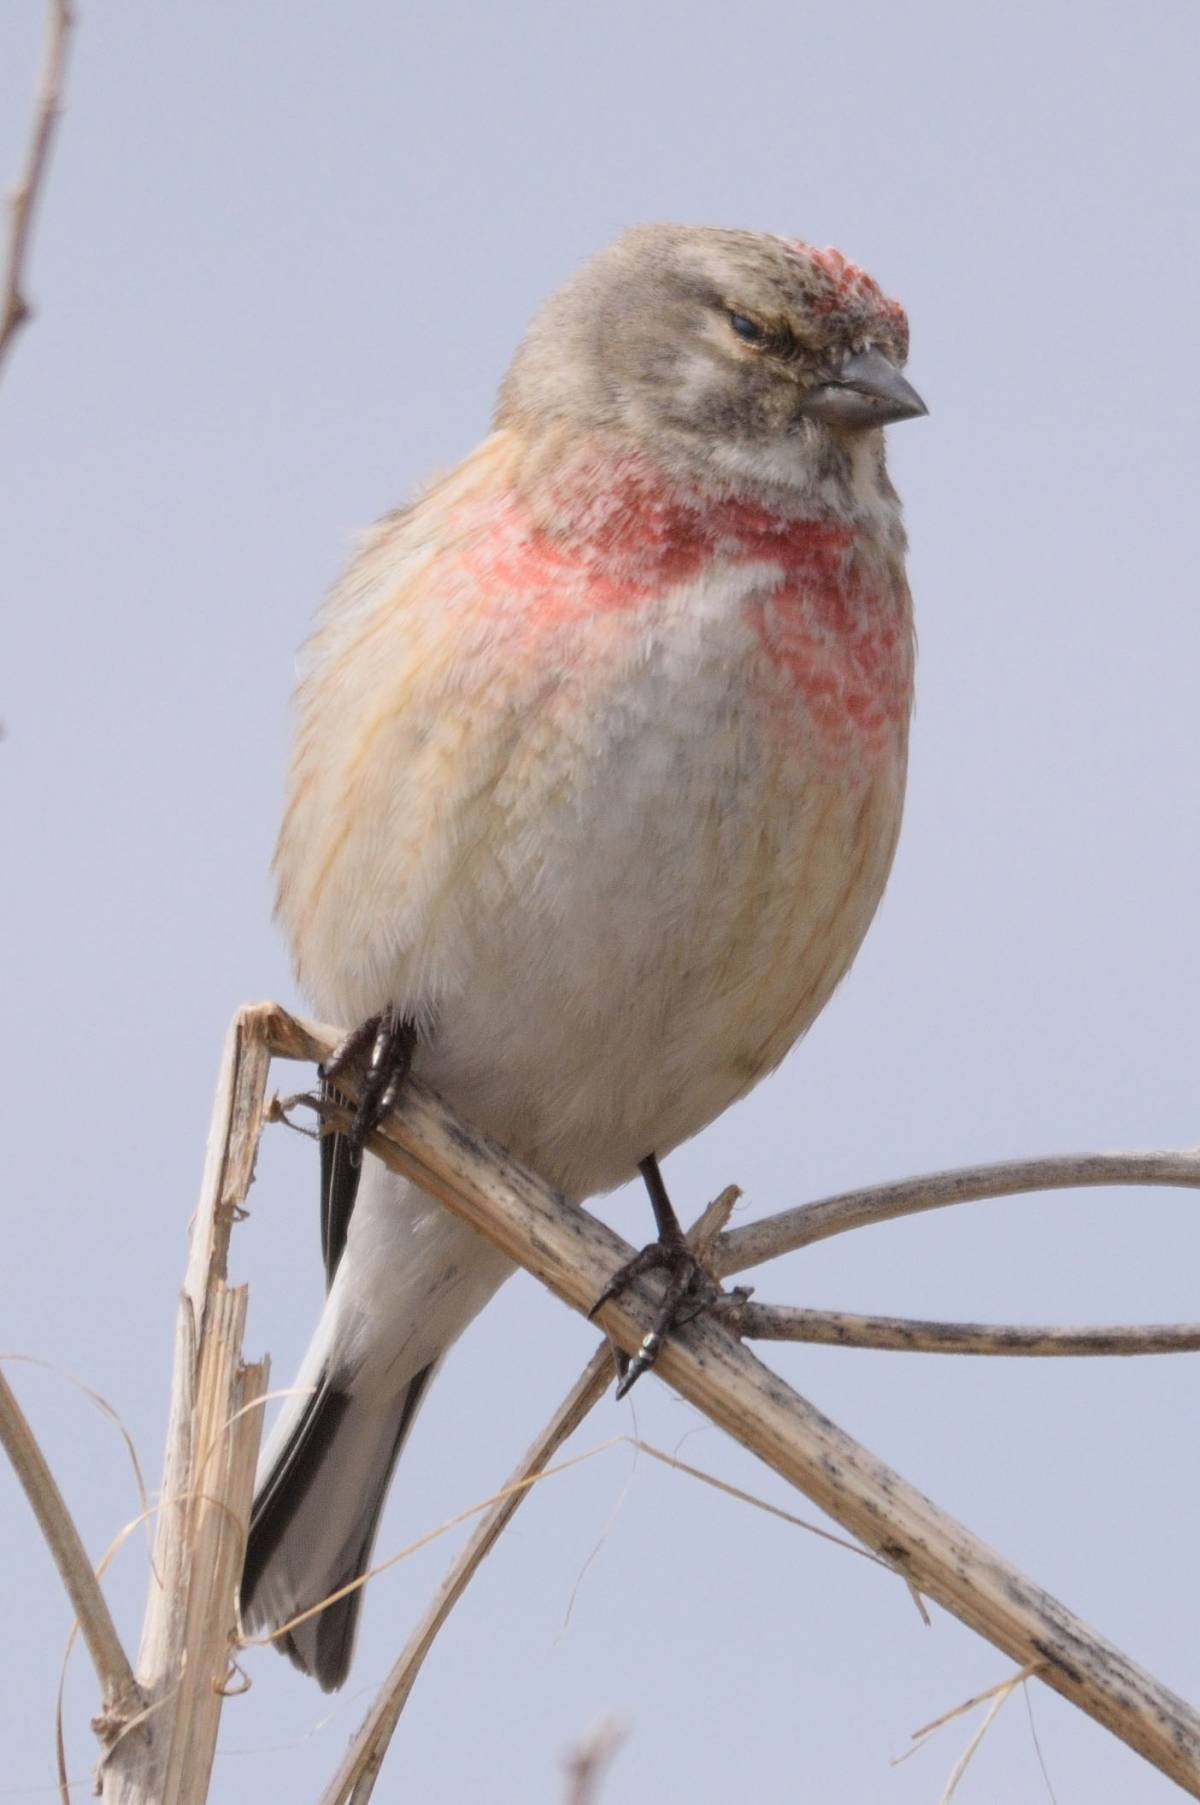 Птички с розовой грудкой фото